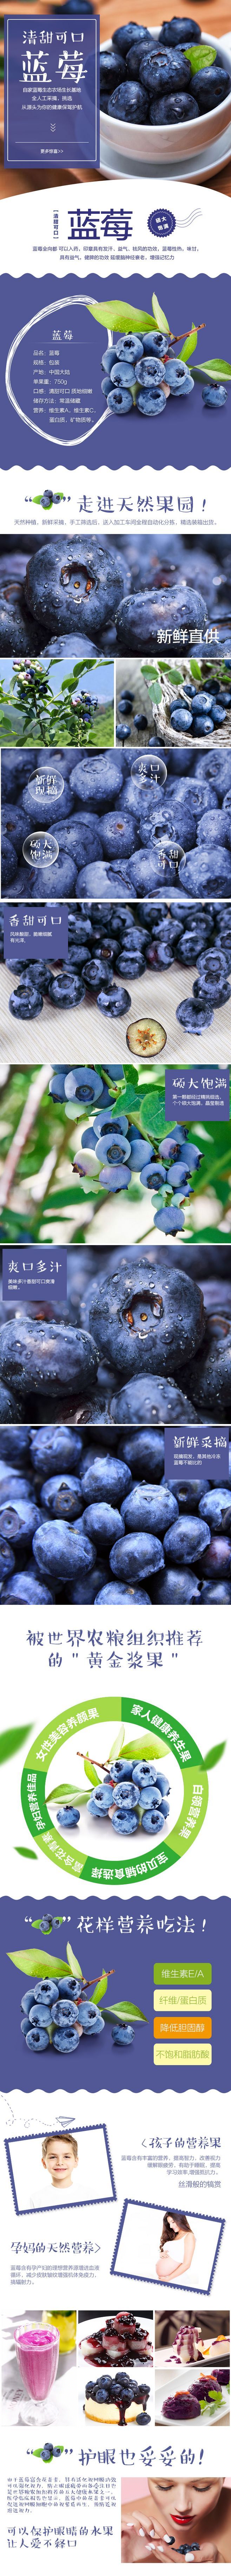 淘宝美工玲玲食品 水果  蓝莓  详情页作品